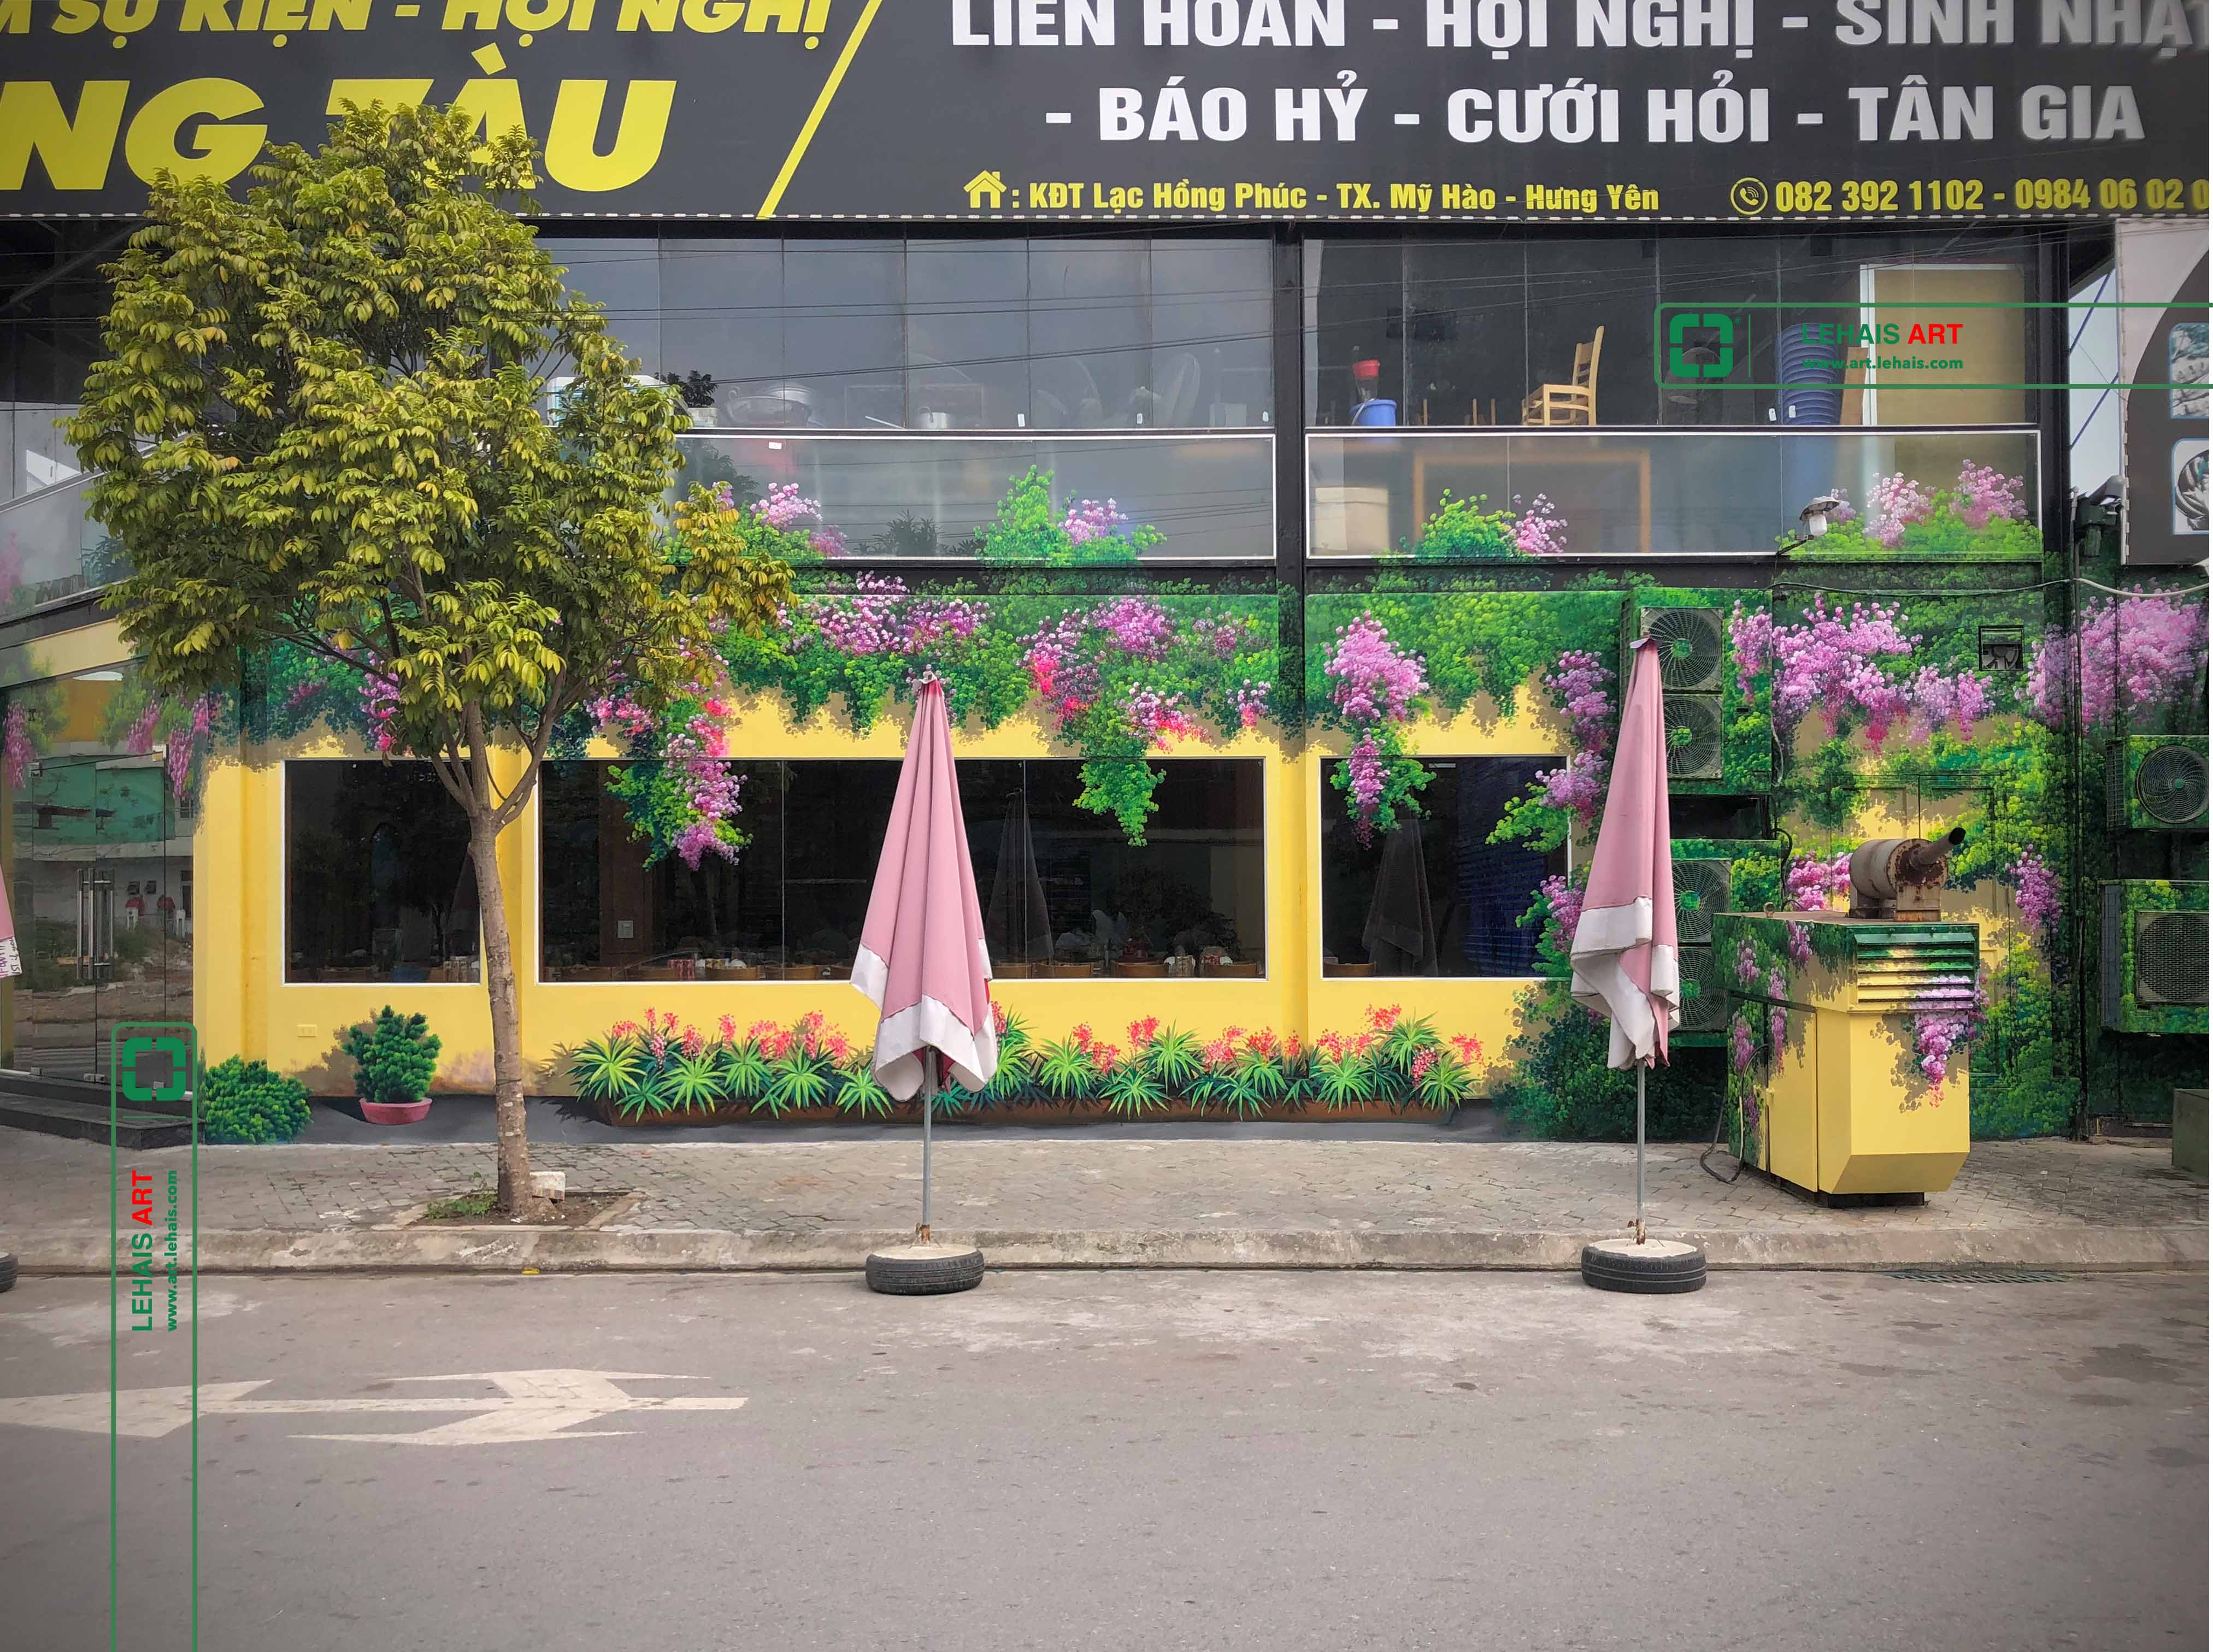 Vẽ tranh 3D trang trí tường tại nhà Hàng Hùng Tàu ở Phố Nối, Hưng Yên - TT198LHAR 8